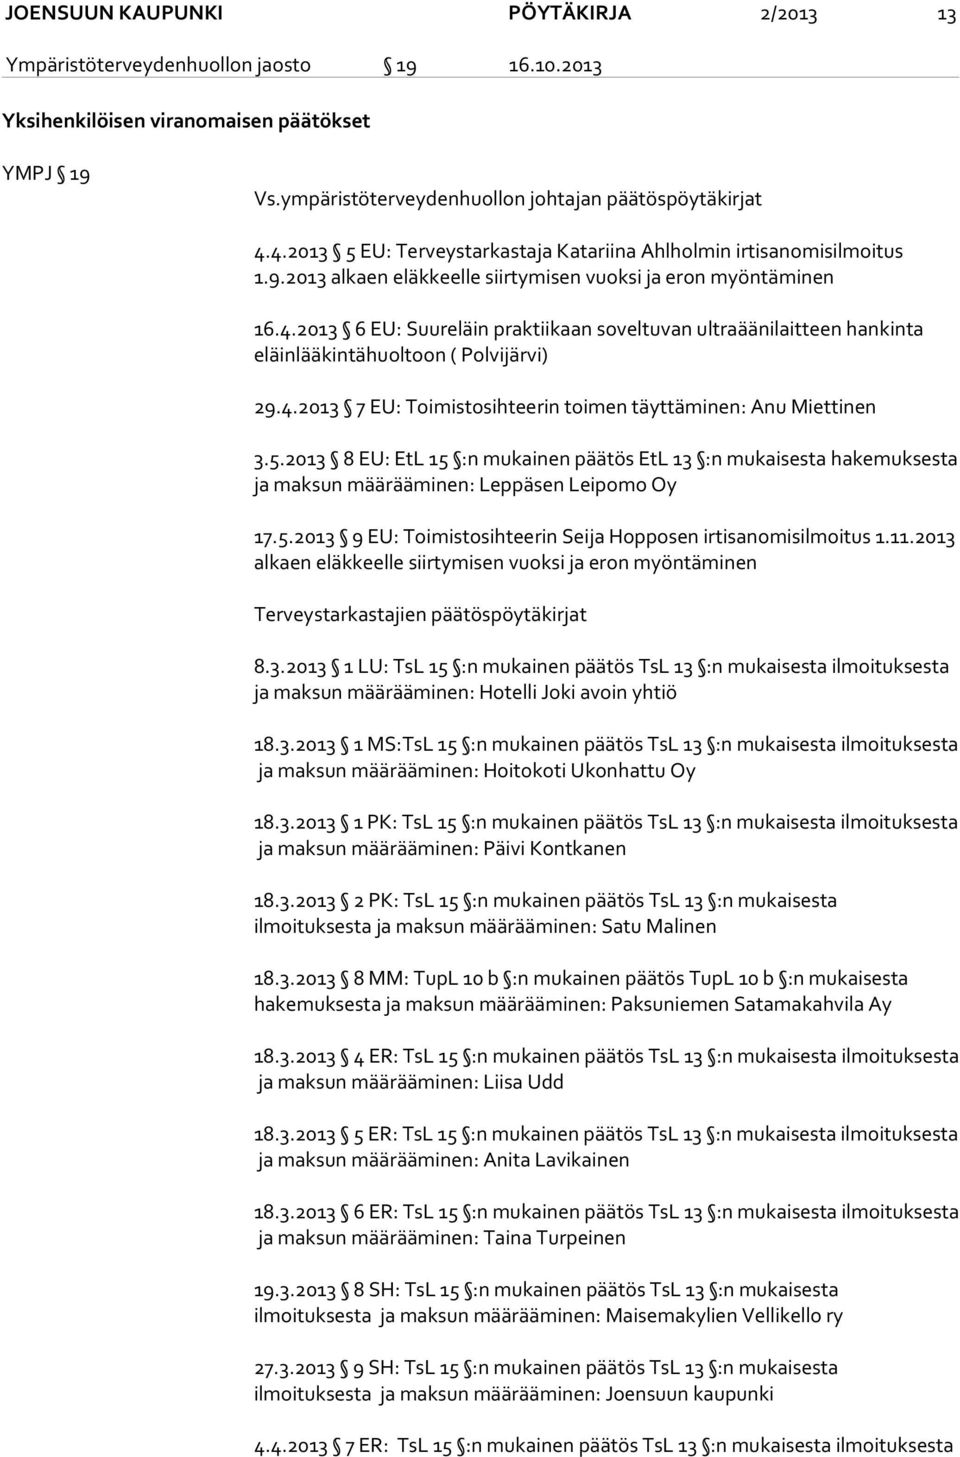 4.2013 7 EU: Toimistosihteerin toimen täyttäminen: Anu Miettinen 3.5.2013 8 EU: EtL 15 :n mukainen päätös EtL 13 :n mukaisesta hakemuksesta ja maksun määrääminen: Leppäsen Leipomo Oy 17.5.2013 9 EU: Toimistosihteerin Seija Hopposen irtisanomisilmoitus 1.